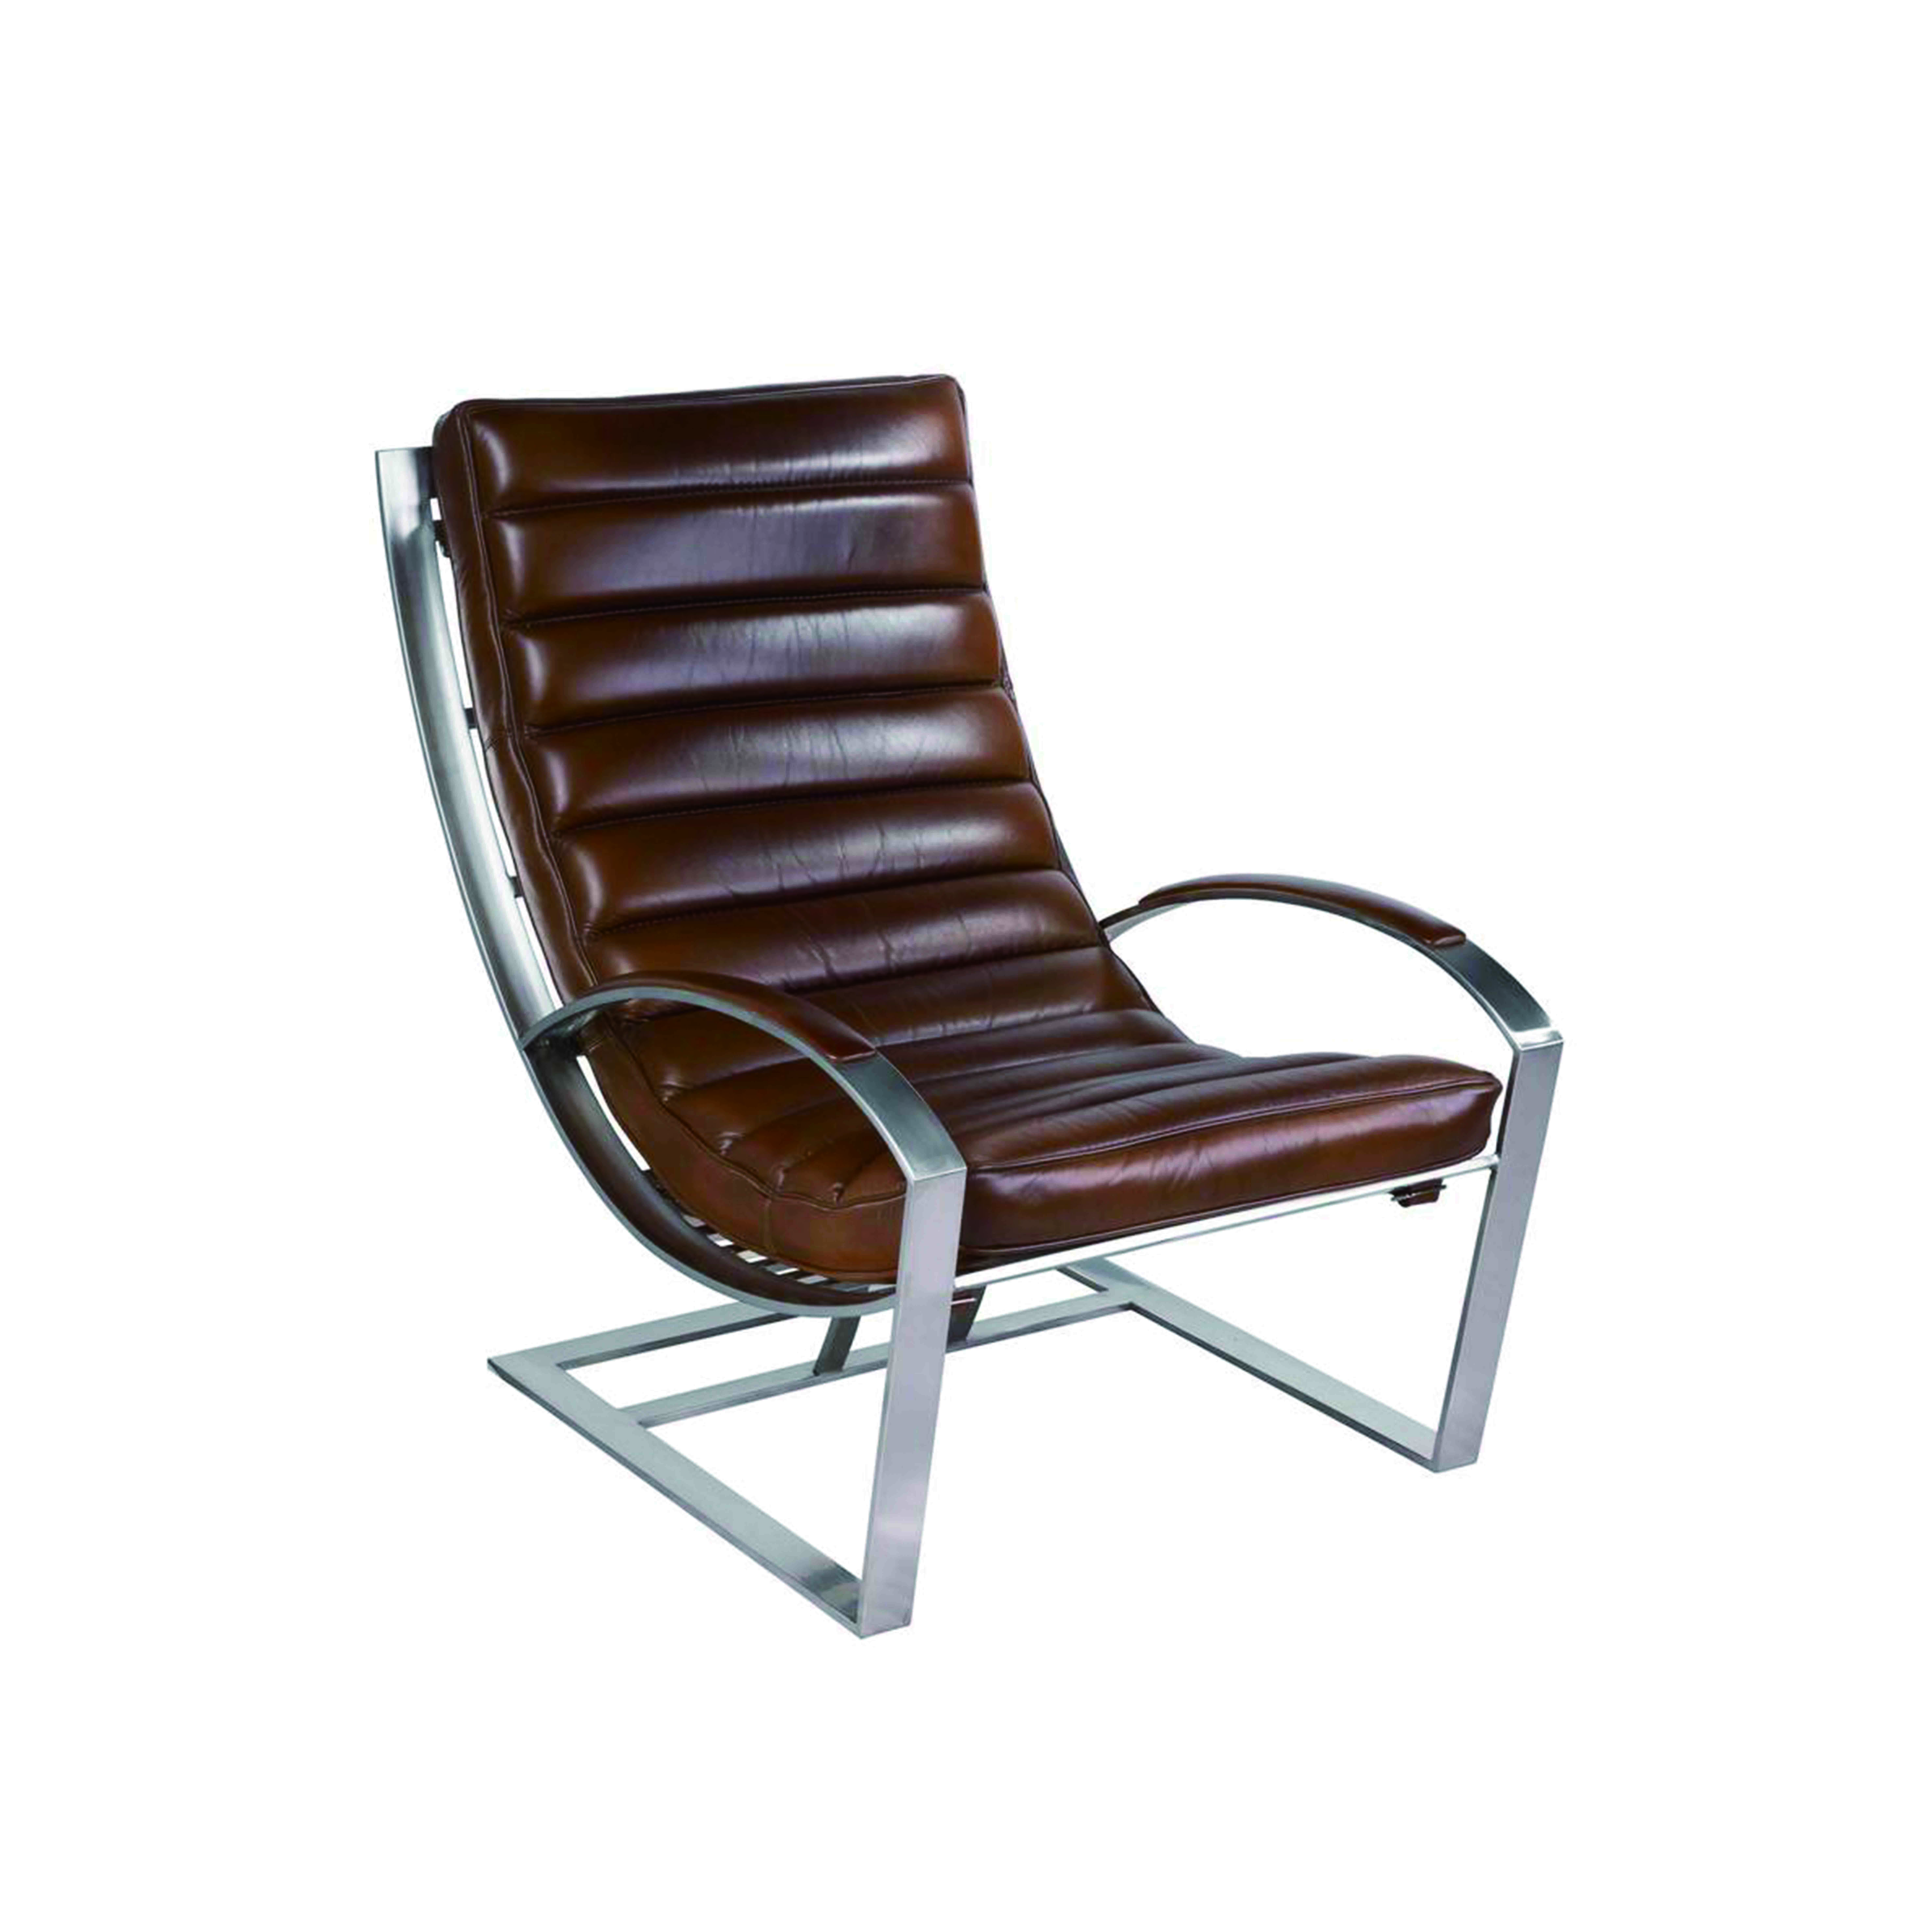 [예약주문 5% 할인]드비저리 마드리드 클럽체어  빈티지 레더 Madrid Club Chair Vintage Leather, 베뉴페, 드비저리 de Bejarry